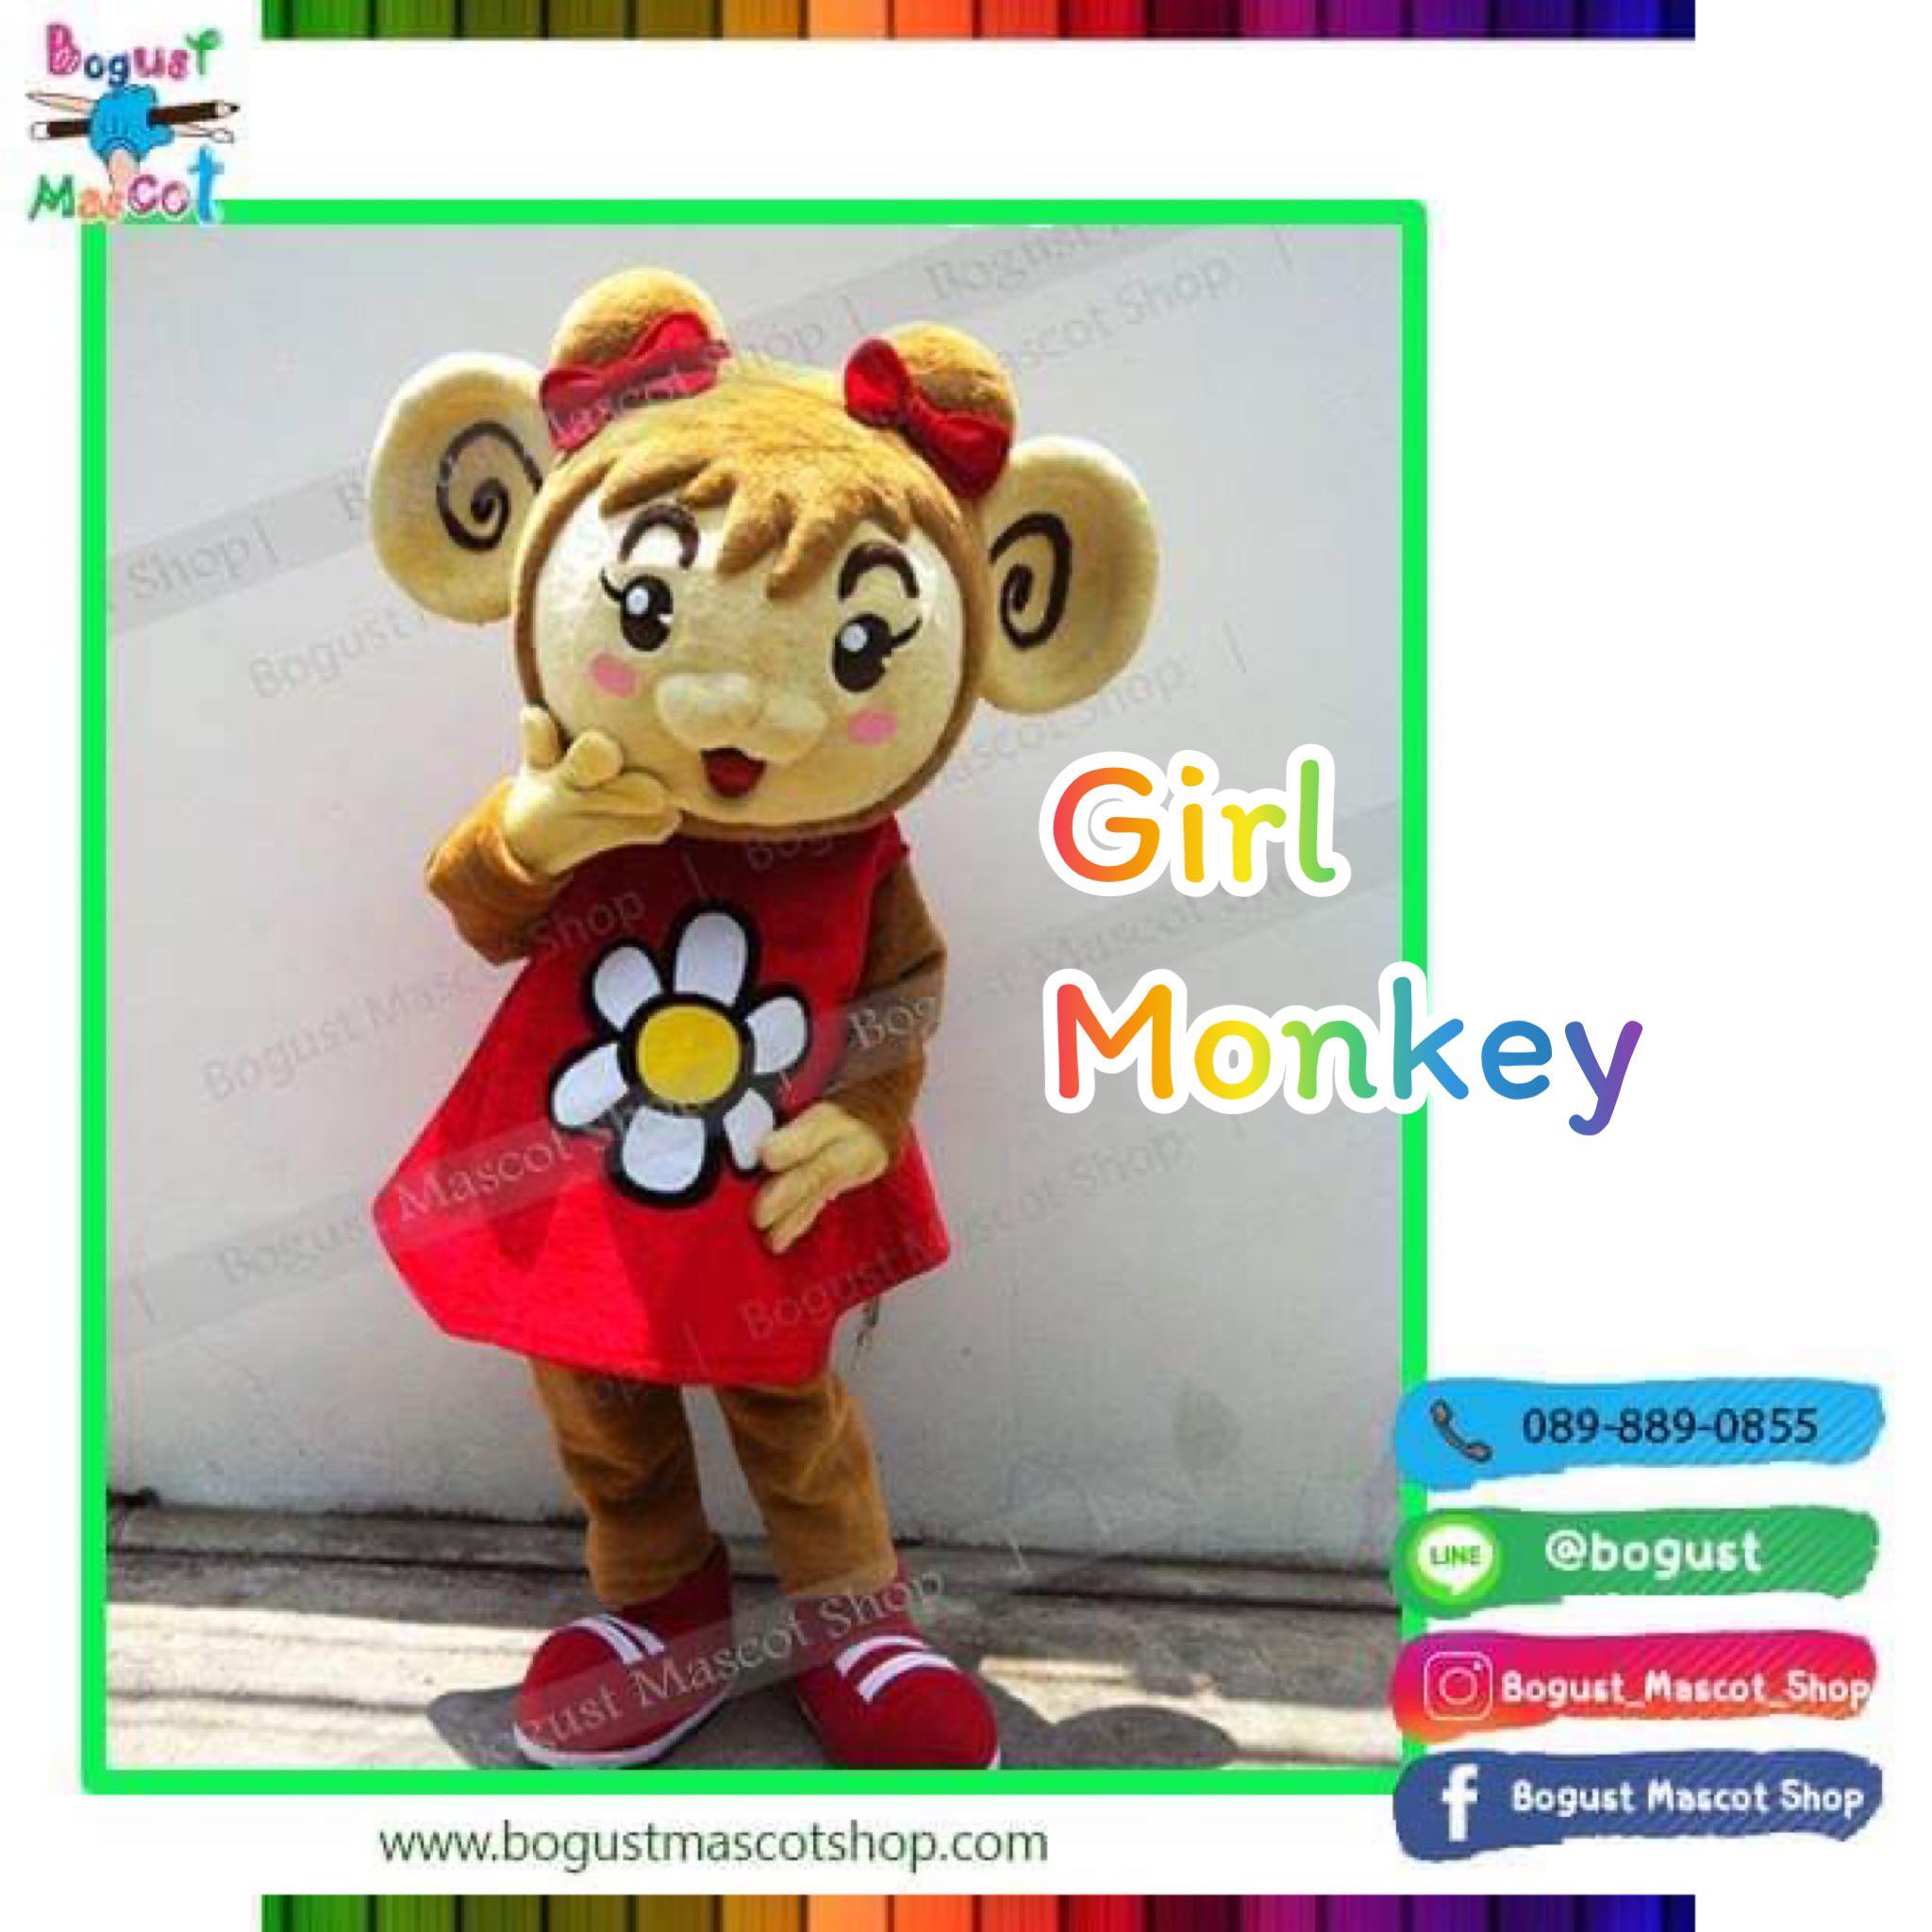 มาสคอต (Mascot) ---> Monkey , ลิง